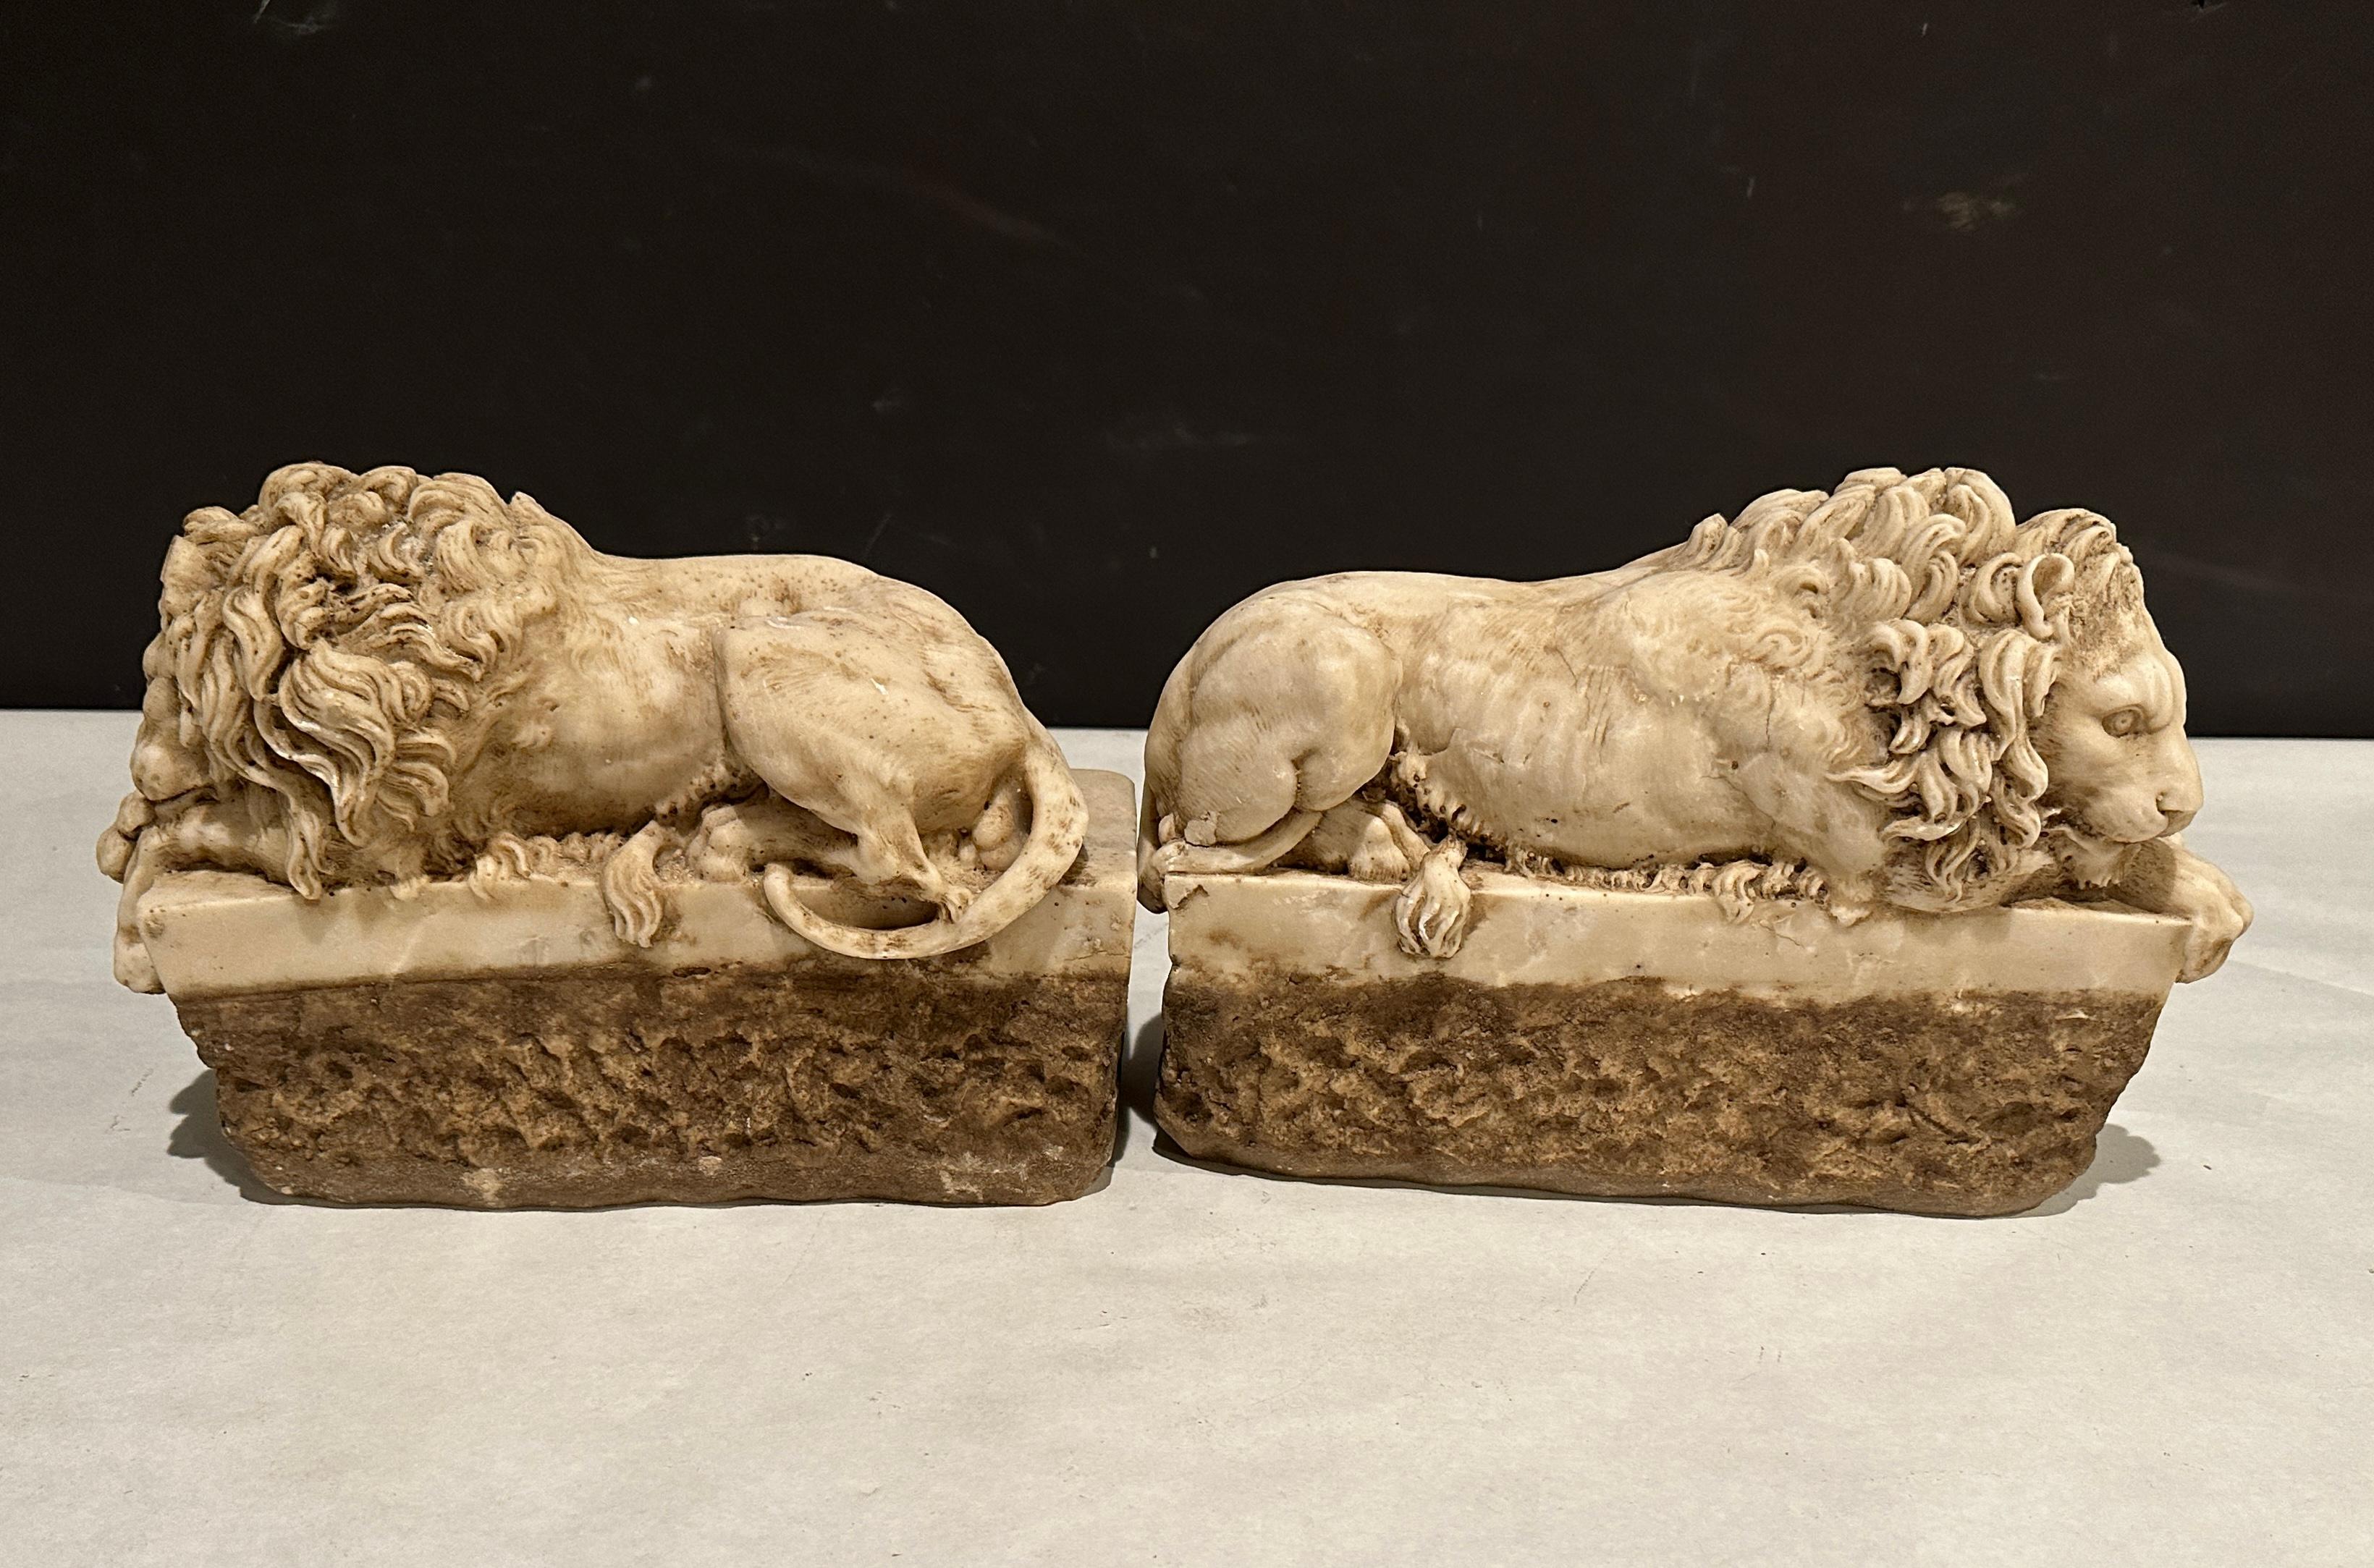 Lions couchés en marbre sculpté de belle qualité d'après des modèles d'Antonio Canova. Les éléments architecturaux font très probablement partie d'un élément ou d'un groupe plus important.